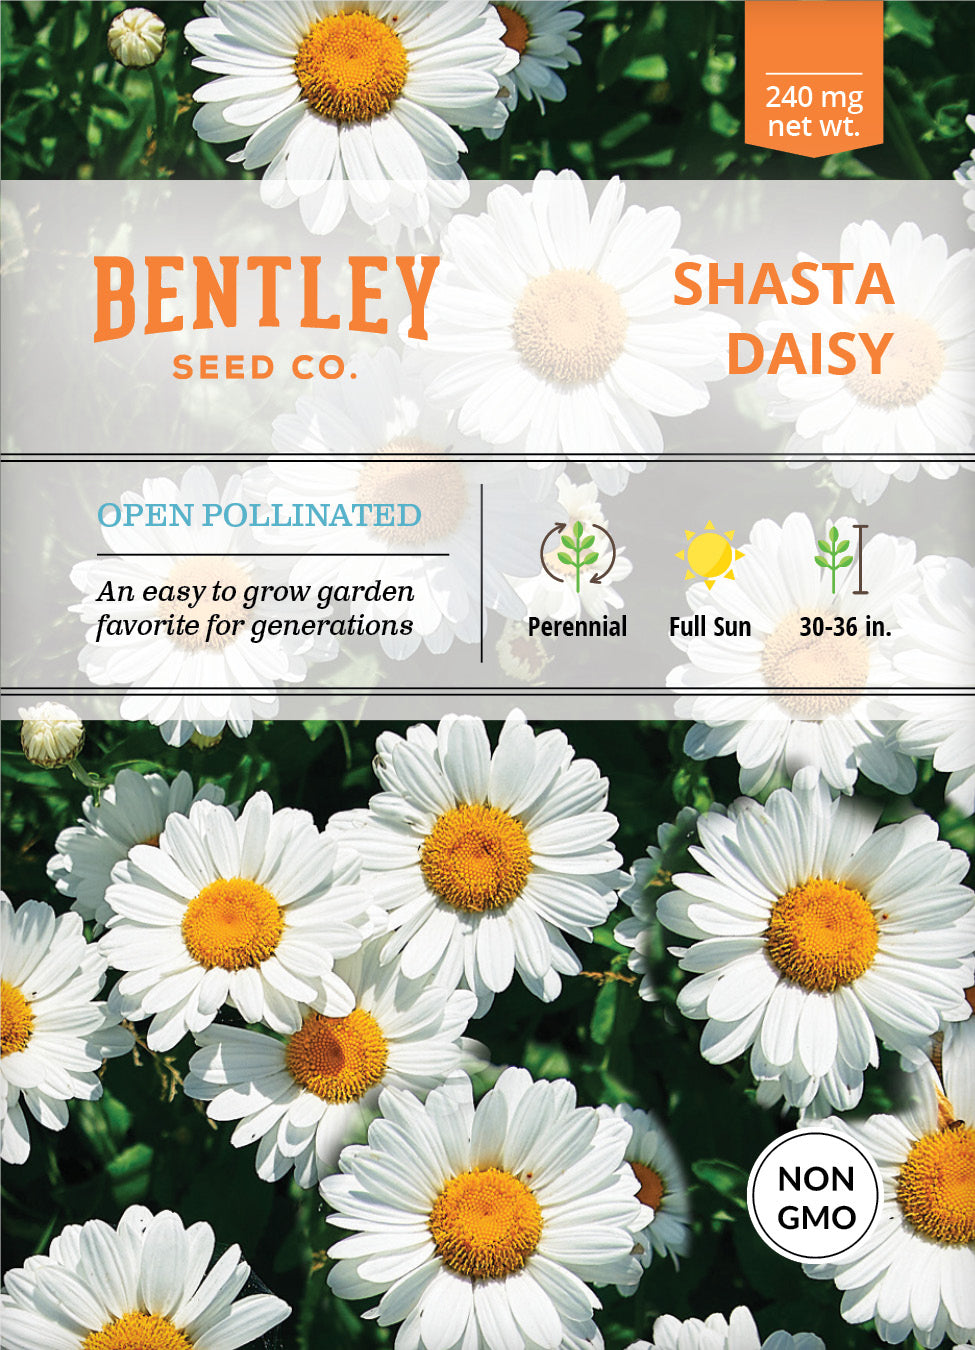 Shasta Daisy Flowers: Information On How To Grow Shasta Daisy